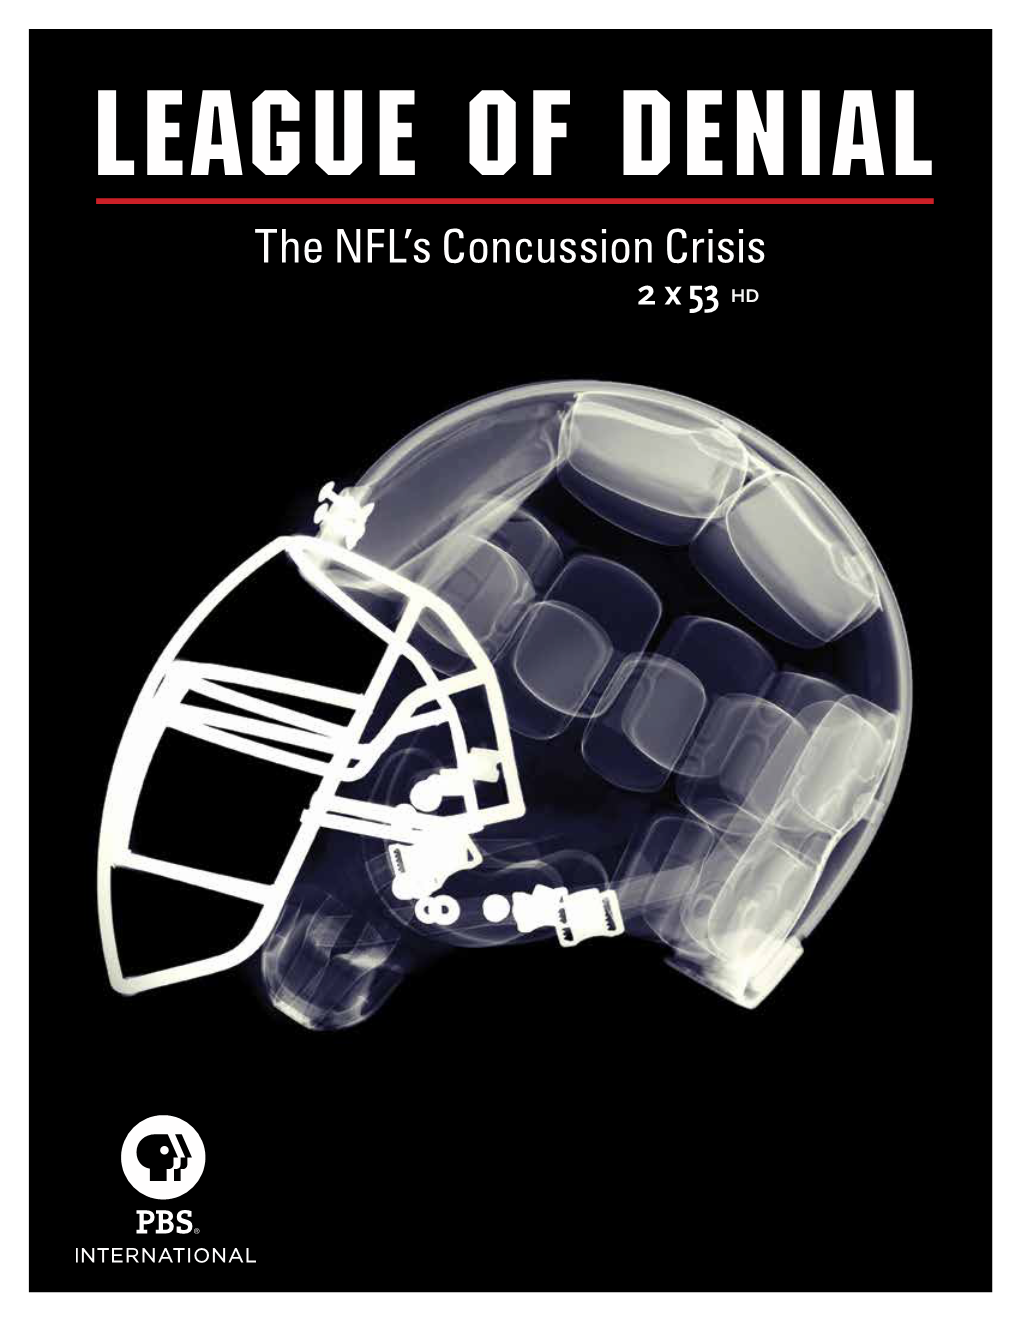 The NFL's Concussion Crisis